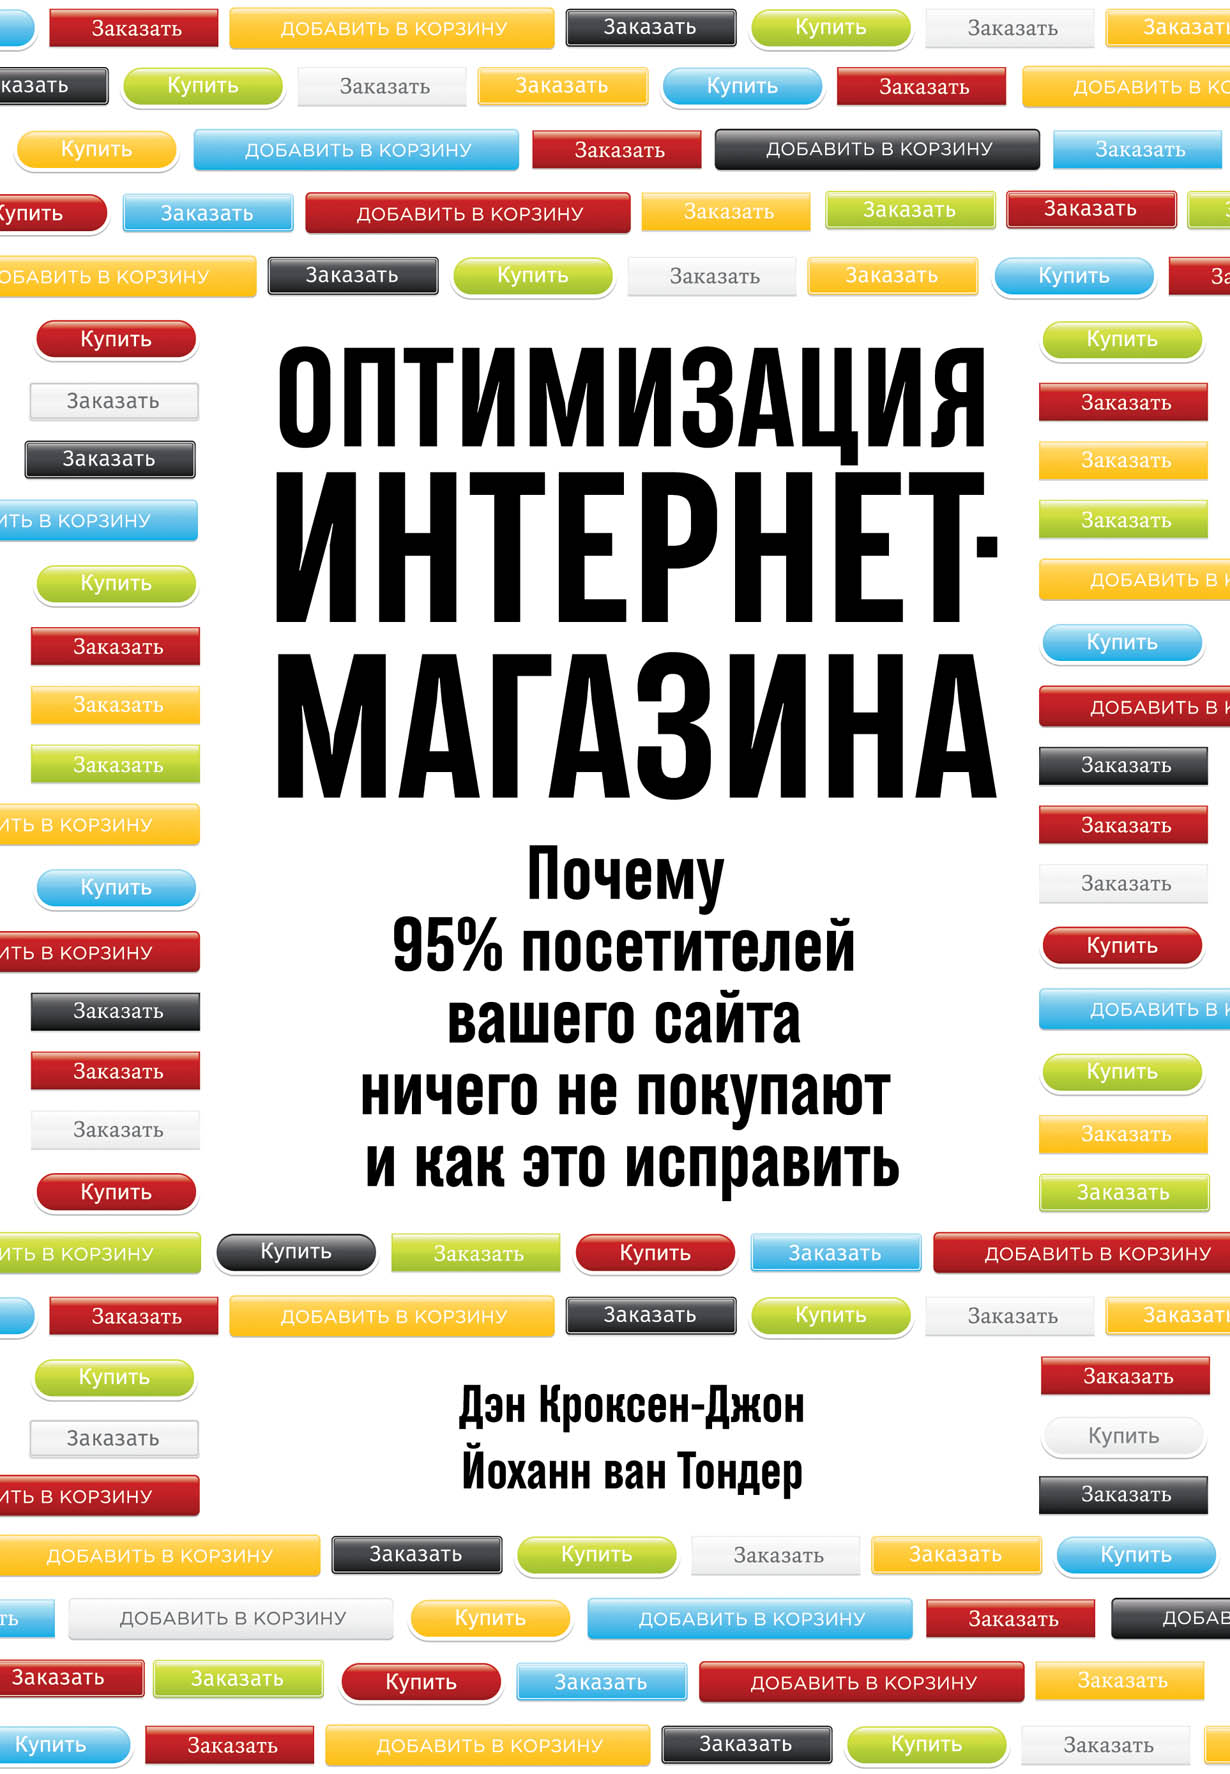 Купить книгу в москве в интернет магазине. Оптимизация интернет магазина книга. Интернеттмагазинкниги. Магазин книг. Книжный интернет магазин.